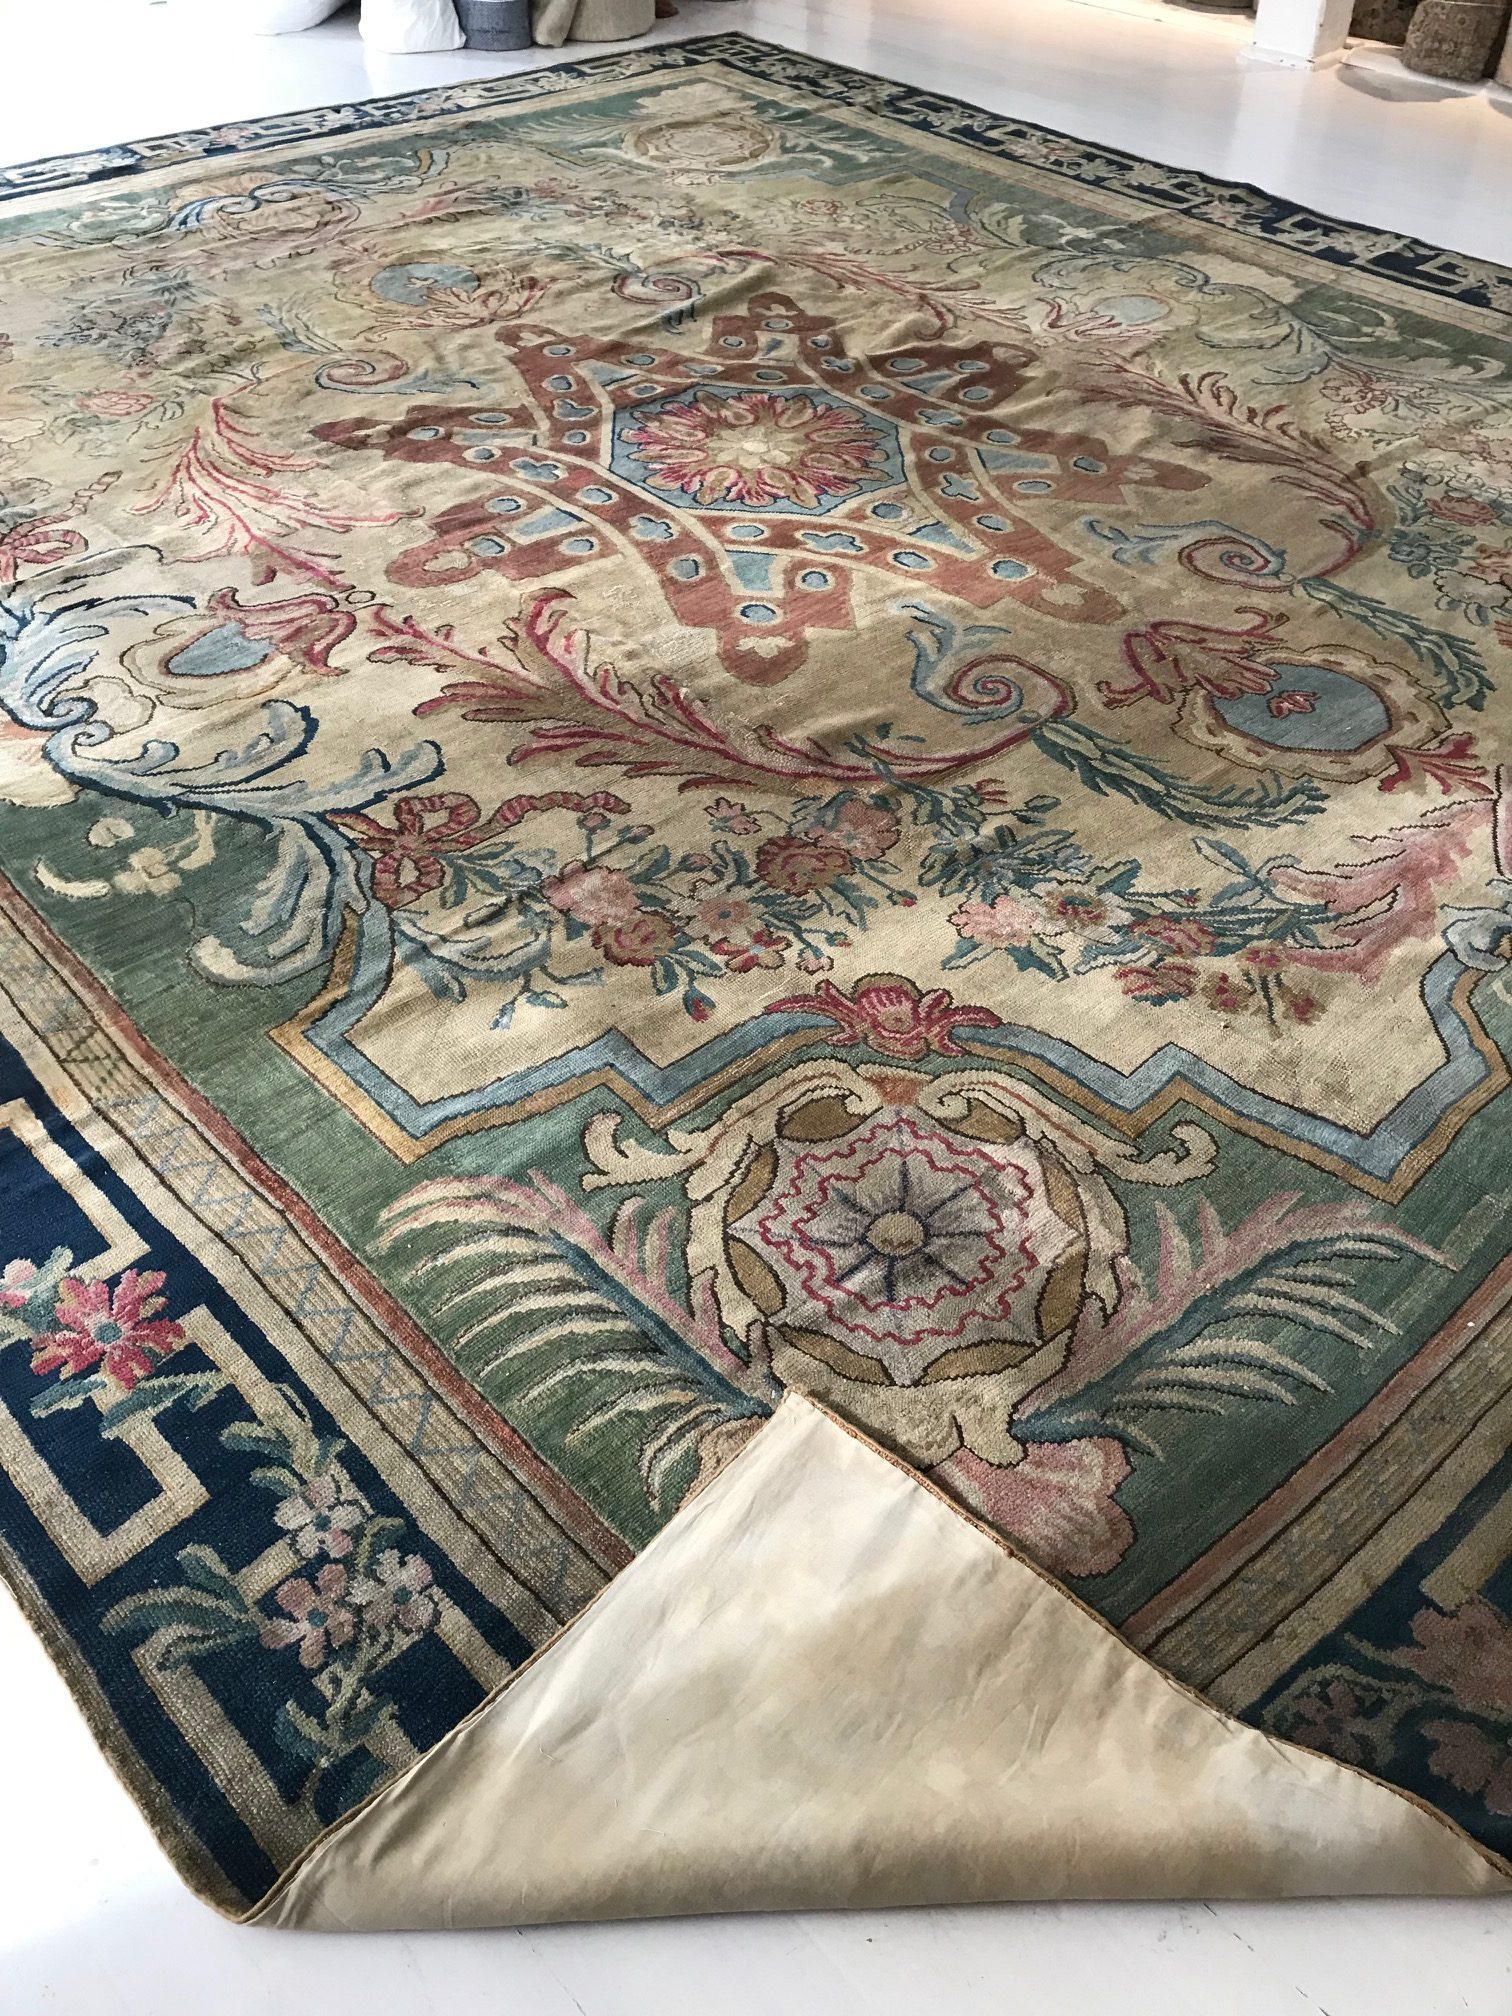 Großer authentischer Savonnerie-Teppich aus handgefertigter Wolle
Größe: 14'10